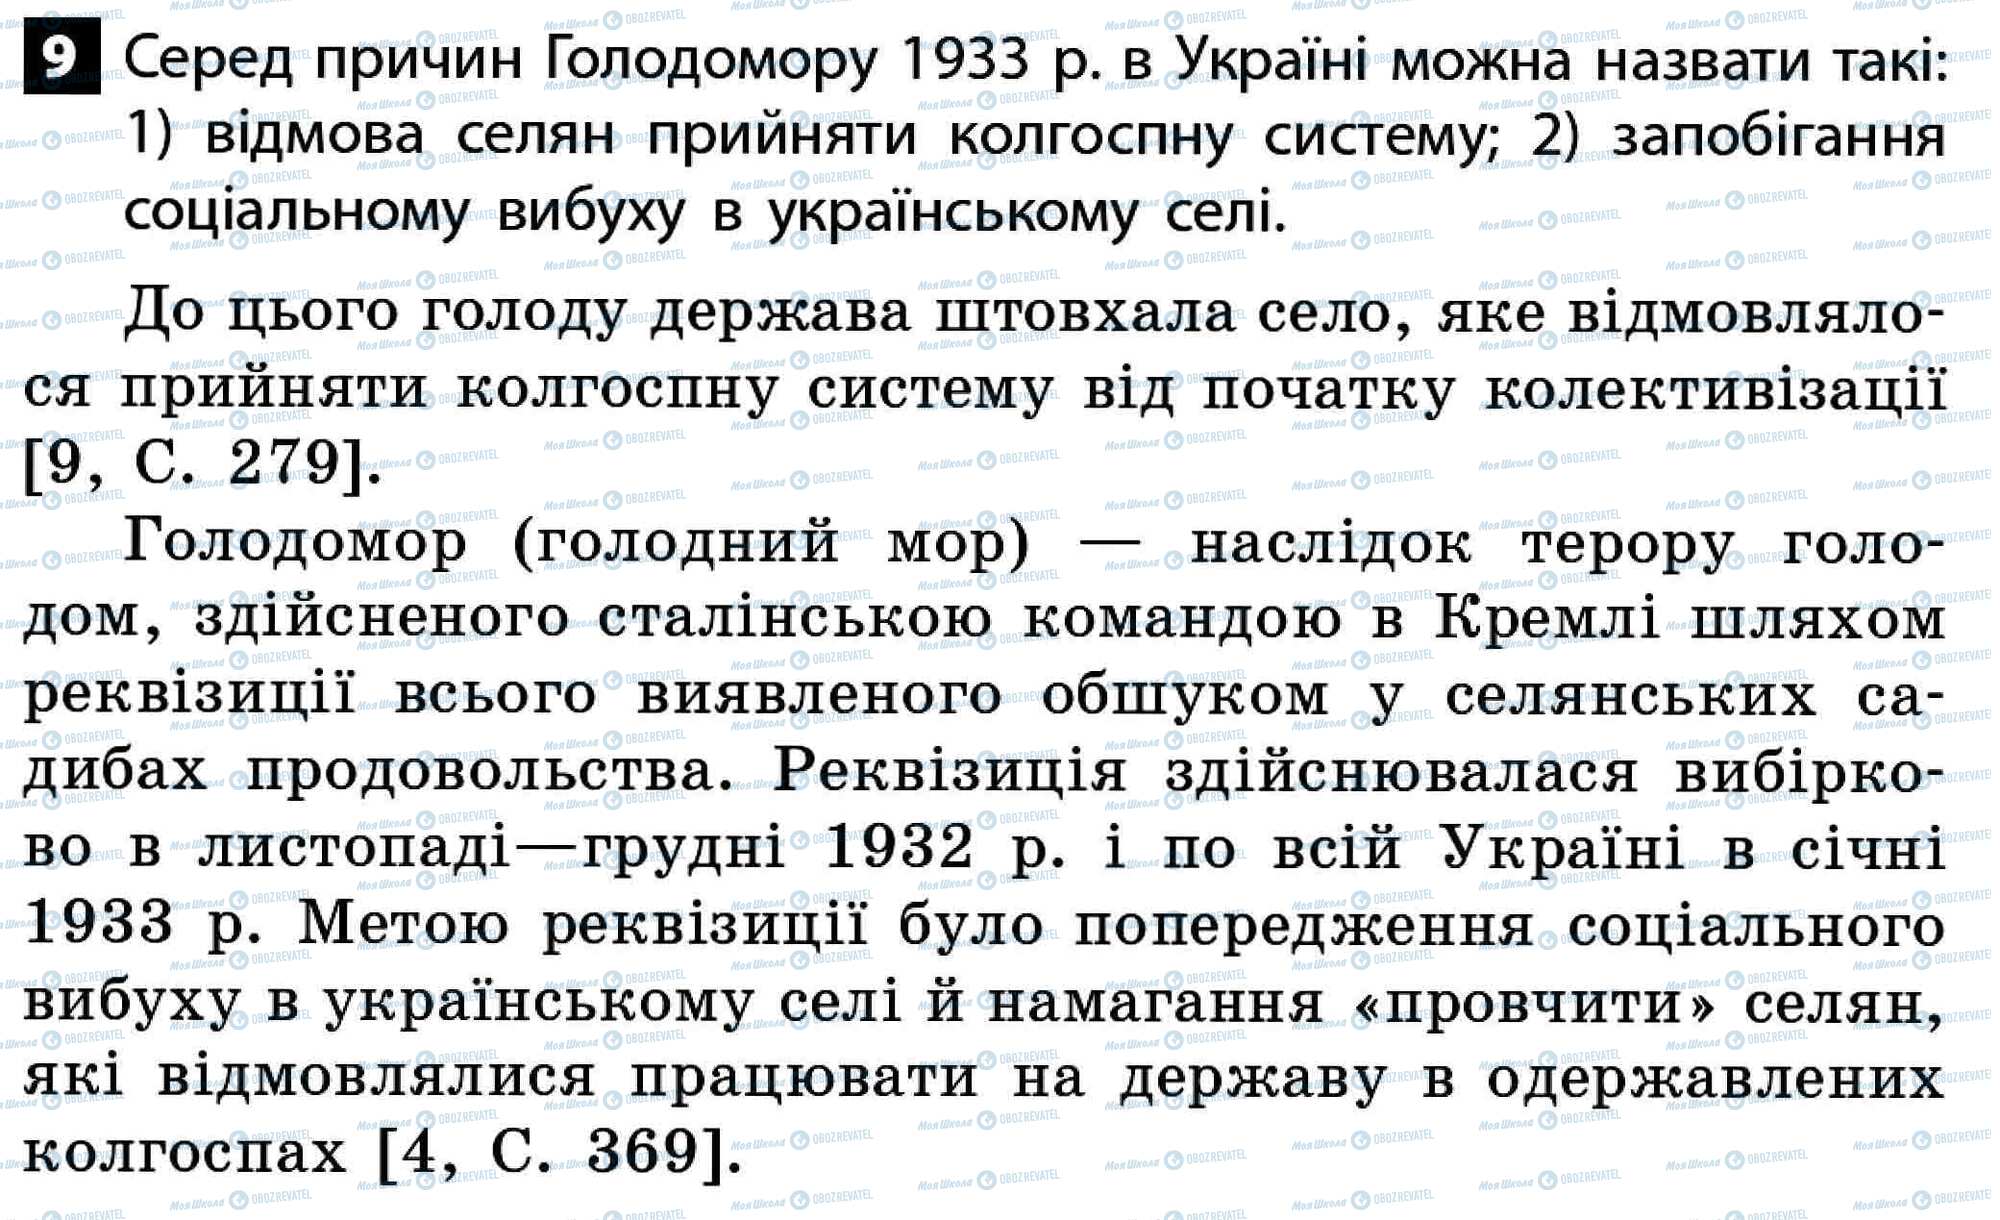 ДПА История Украины 11 класс страница 9